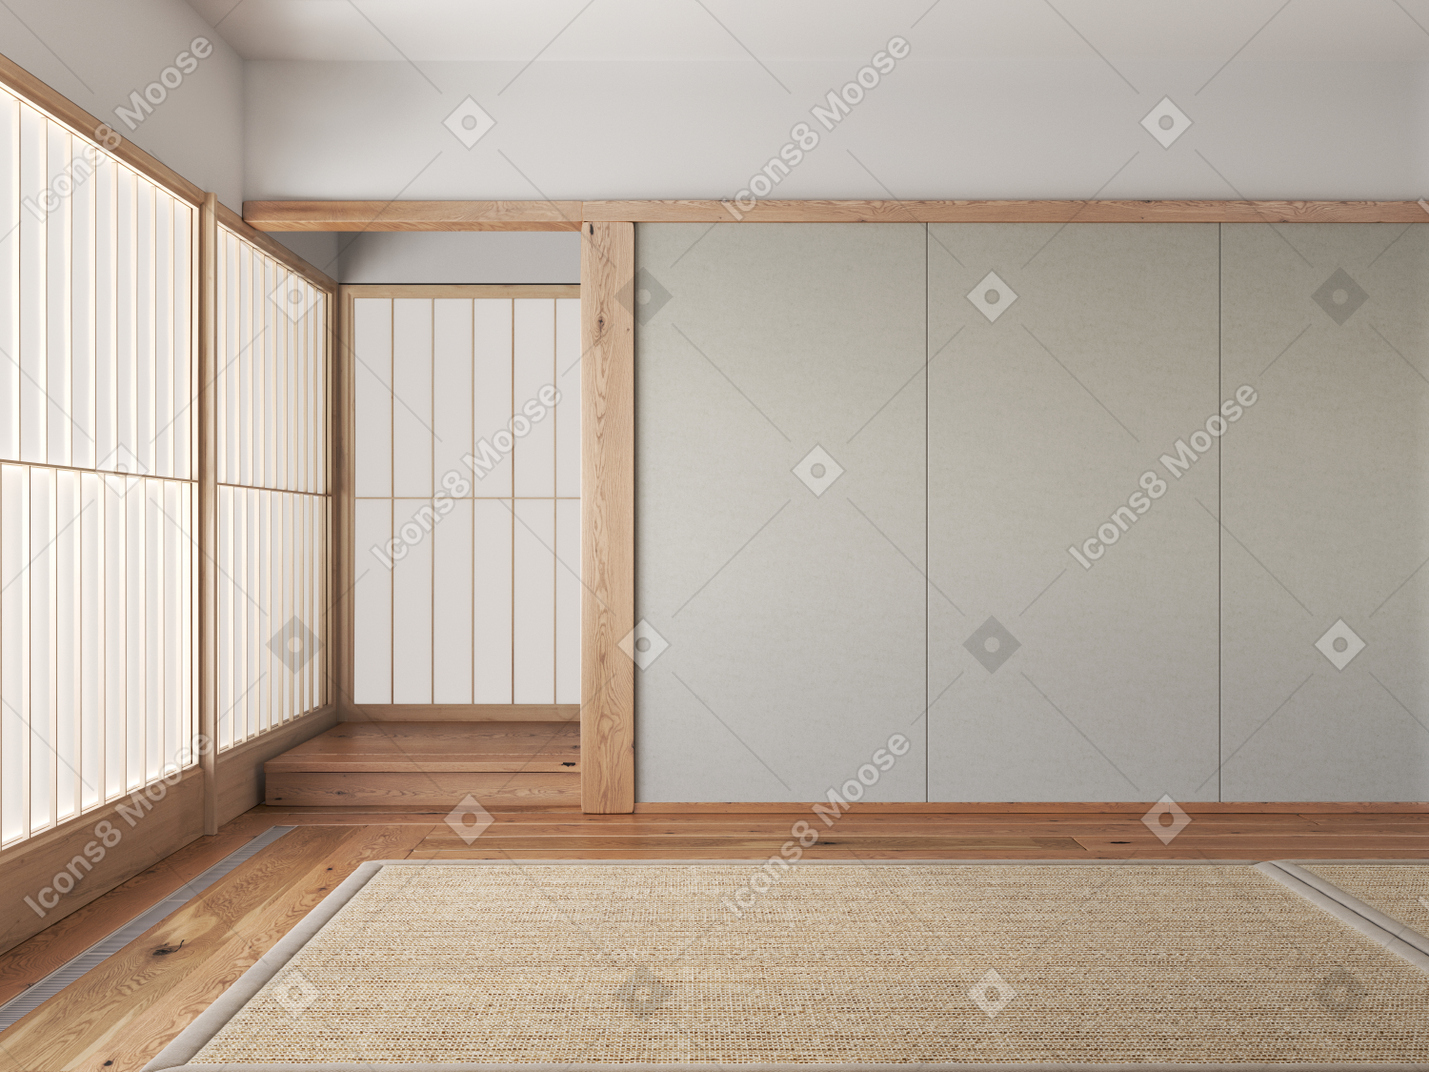 Traditionelles japanisches interieur mit tatami-matten und shoji-raumteilern